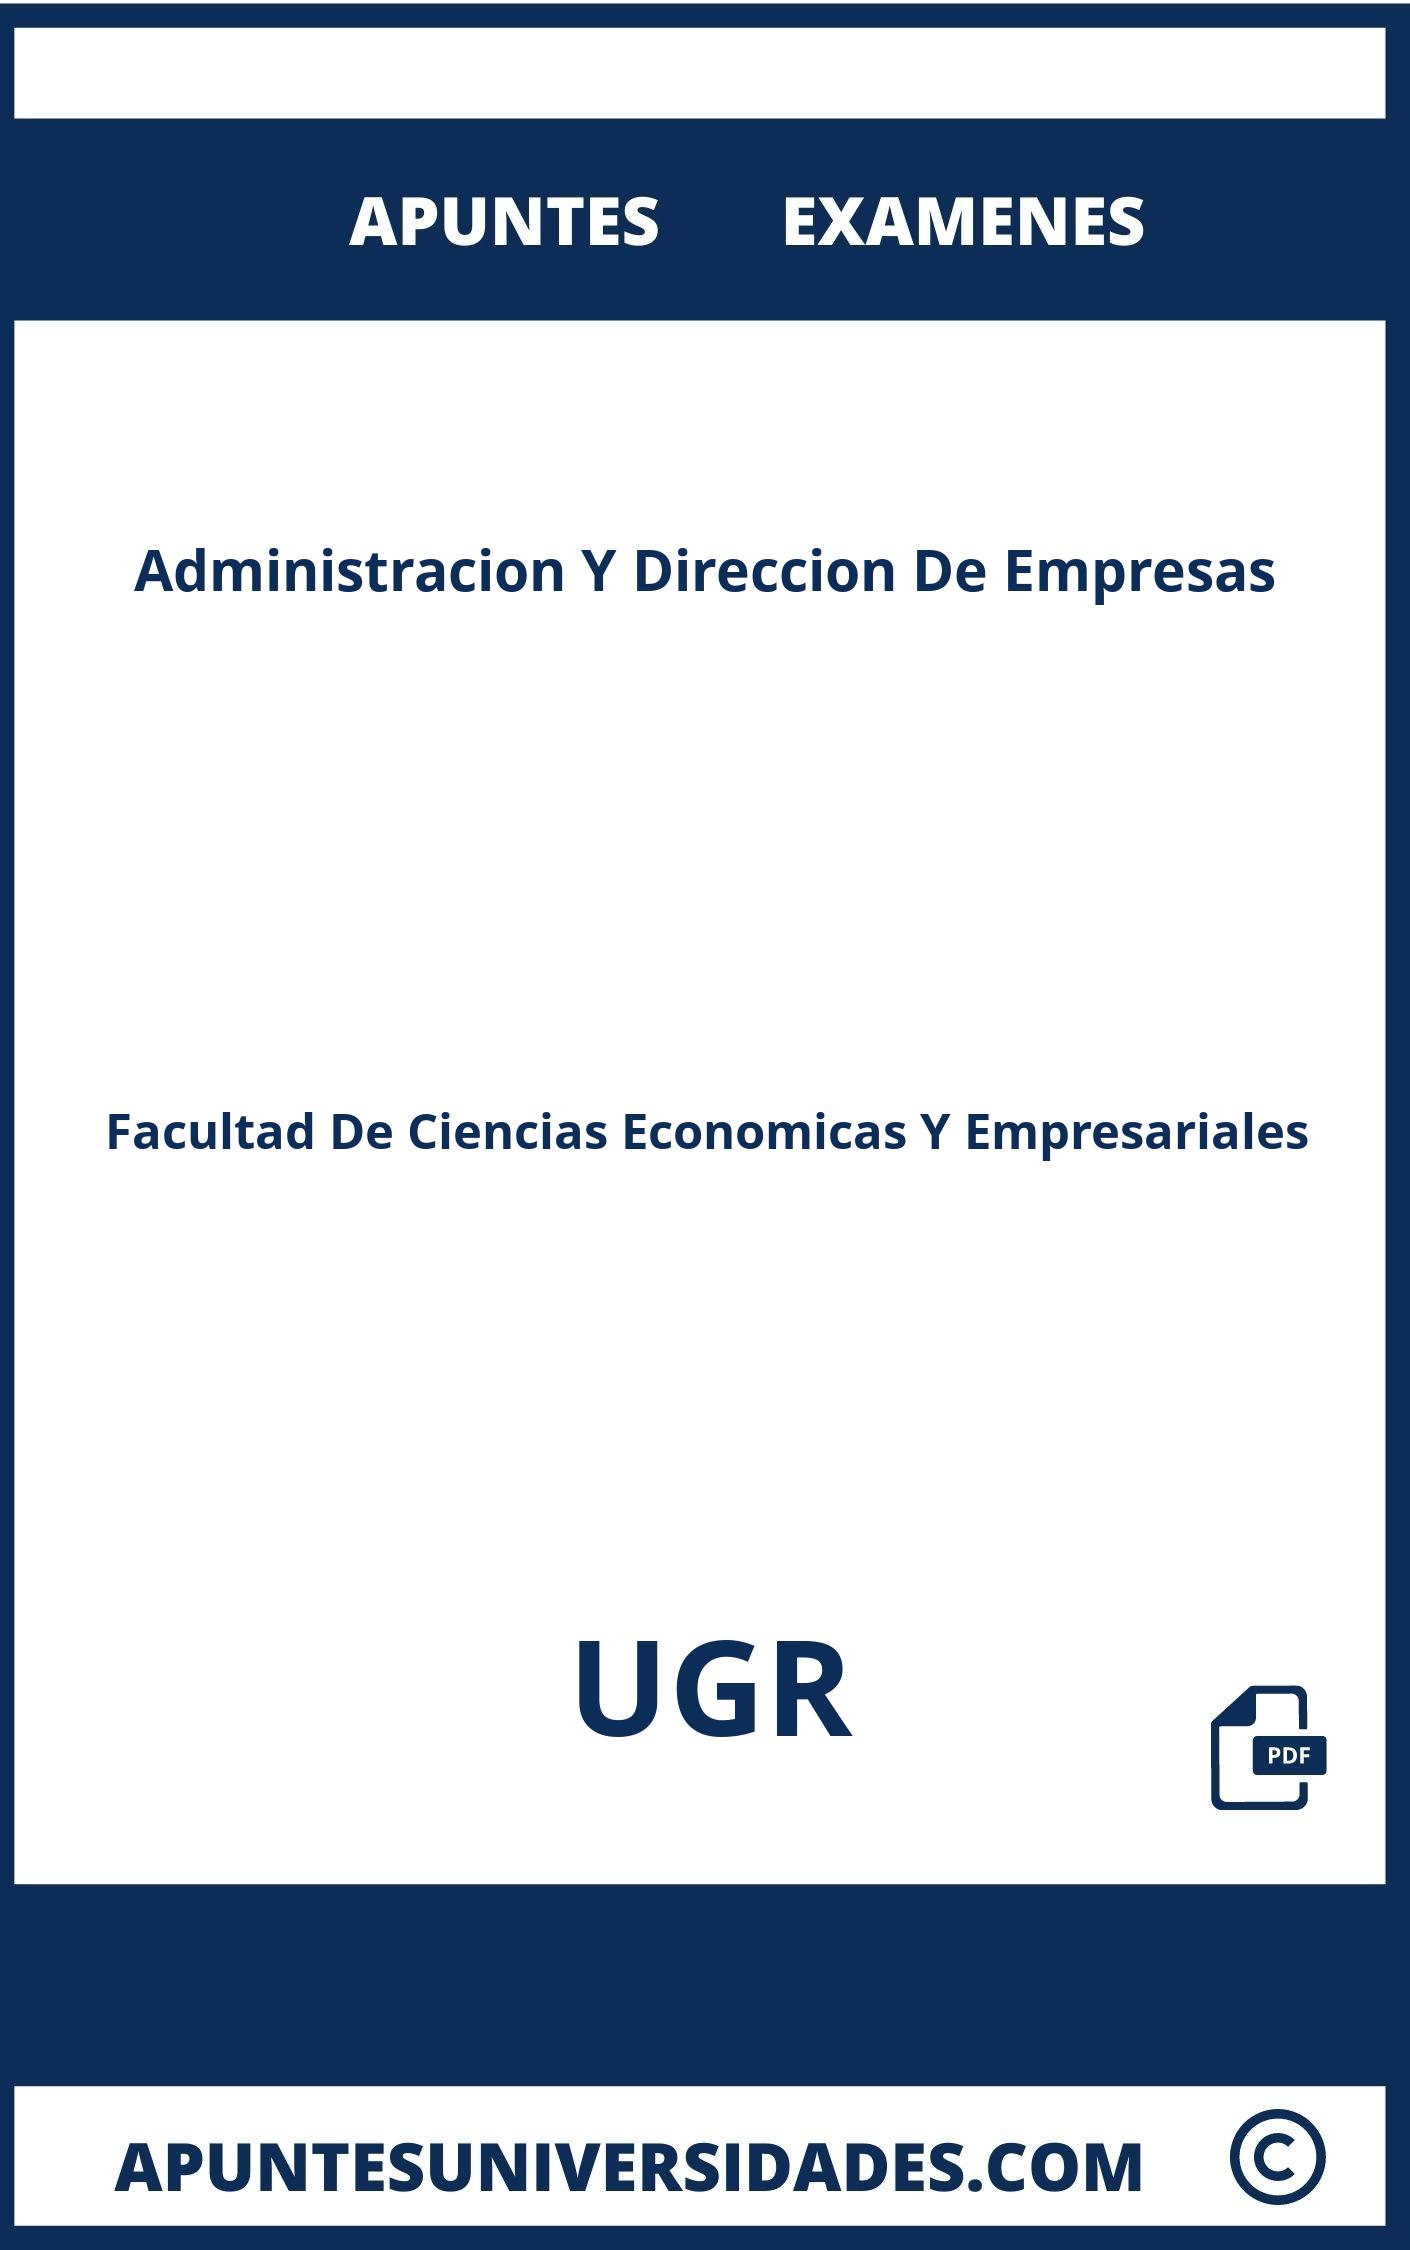 Apuntes Examenes Administracion Y Direccion De Empresas UGR